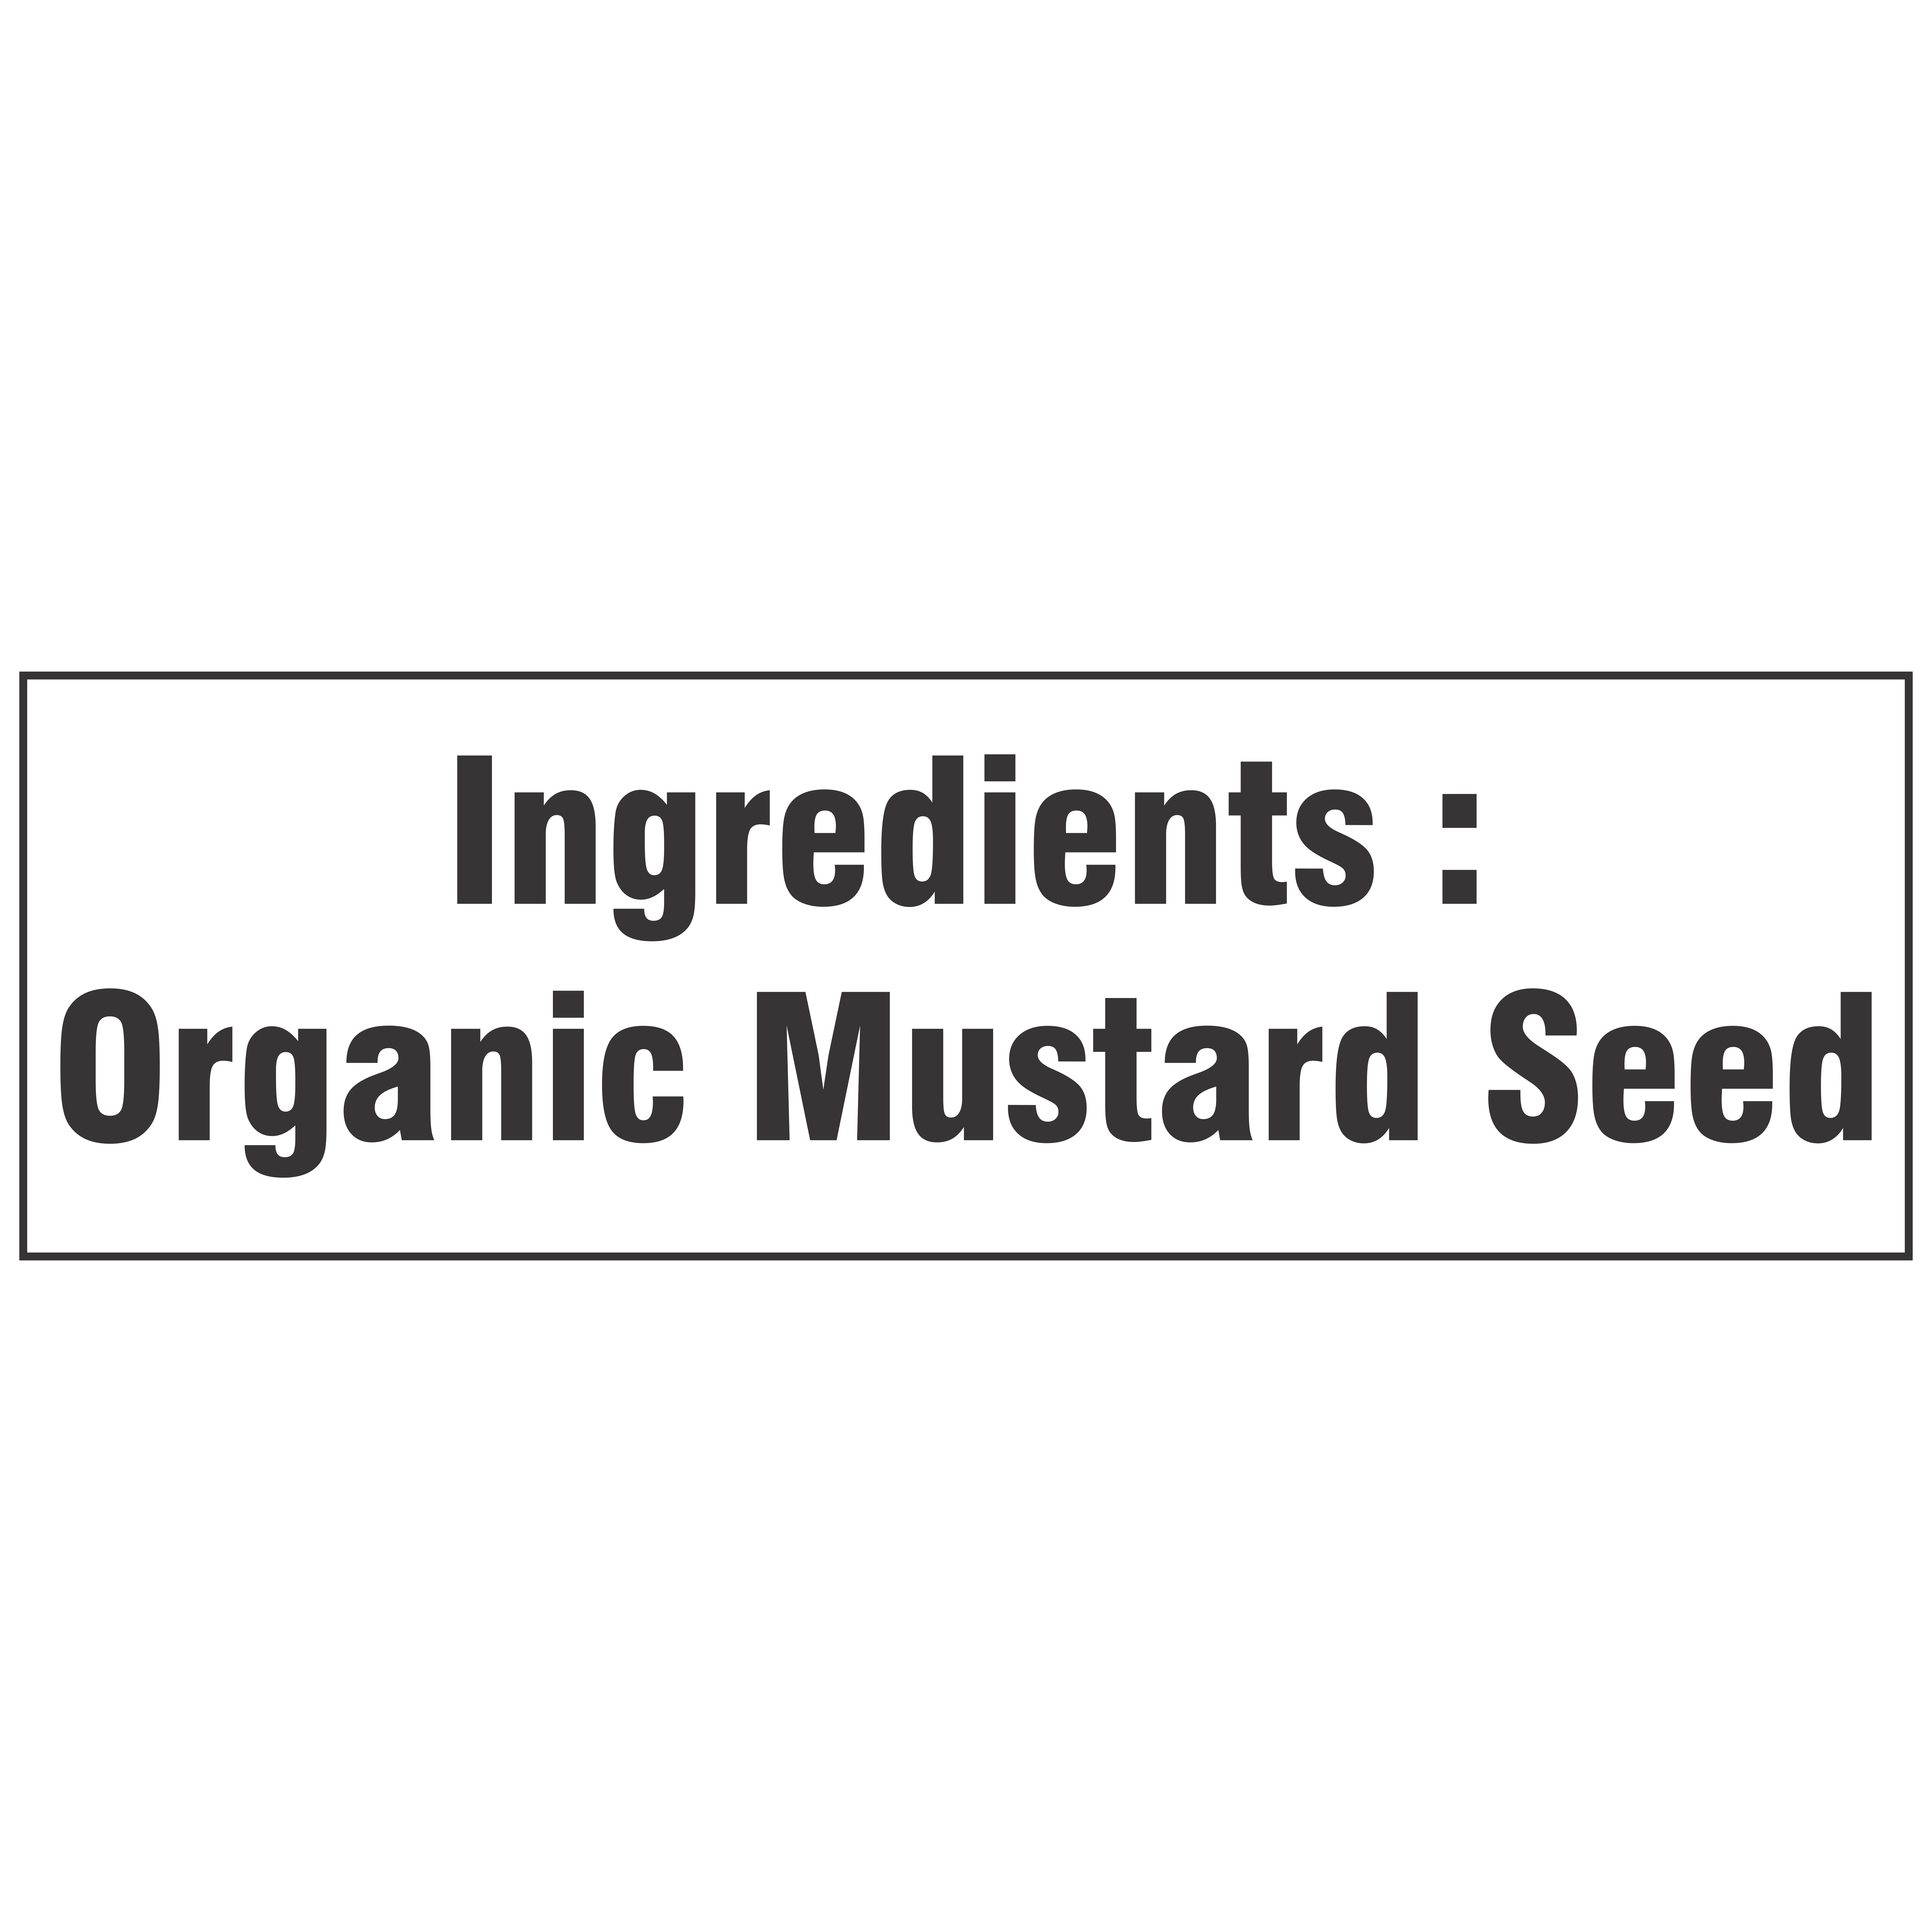 organic mustard seeds ingredients